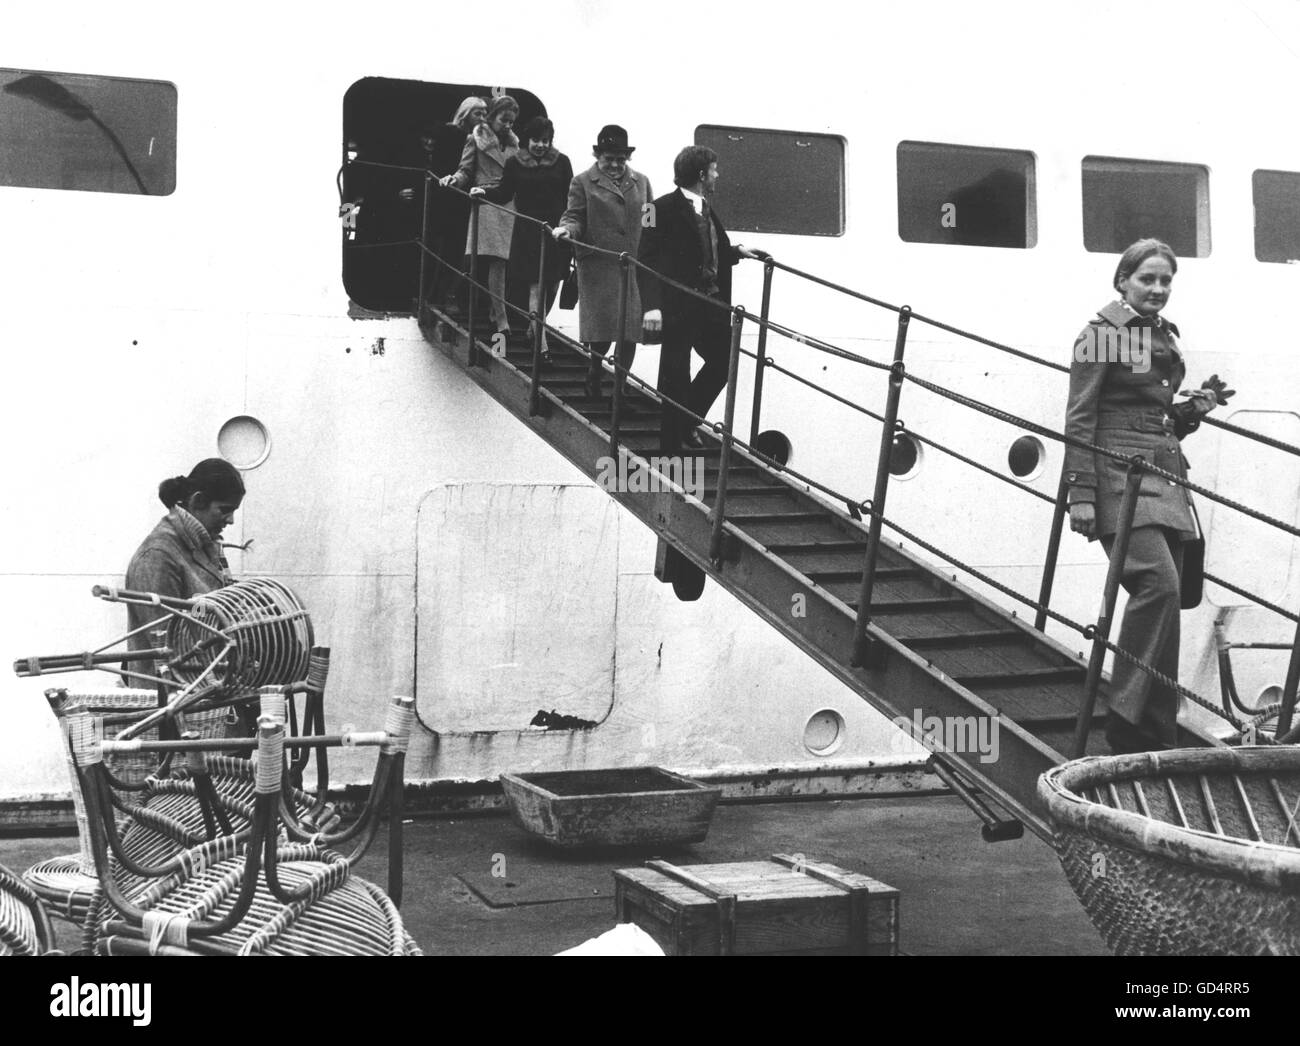 Guerre du Vietnam 1955 - 1975, aide humanitaire, retour du navire hôpital 'Helgoland' de la croix rouge allemande du Sud Vietnam, janvier 1972, l'équipage quitte le bord, droits additionnels-Clearences-non disponible Banque D'Images